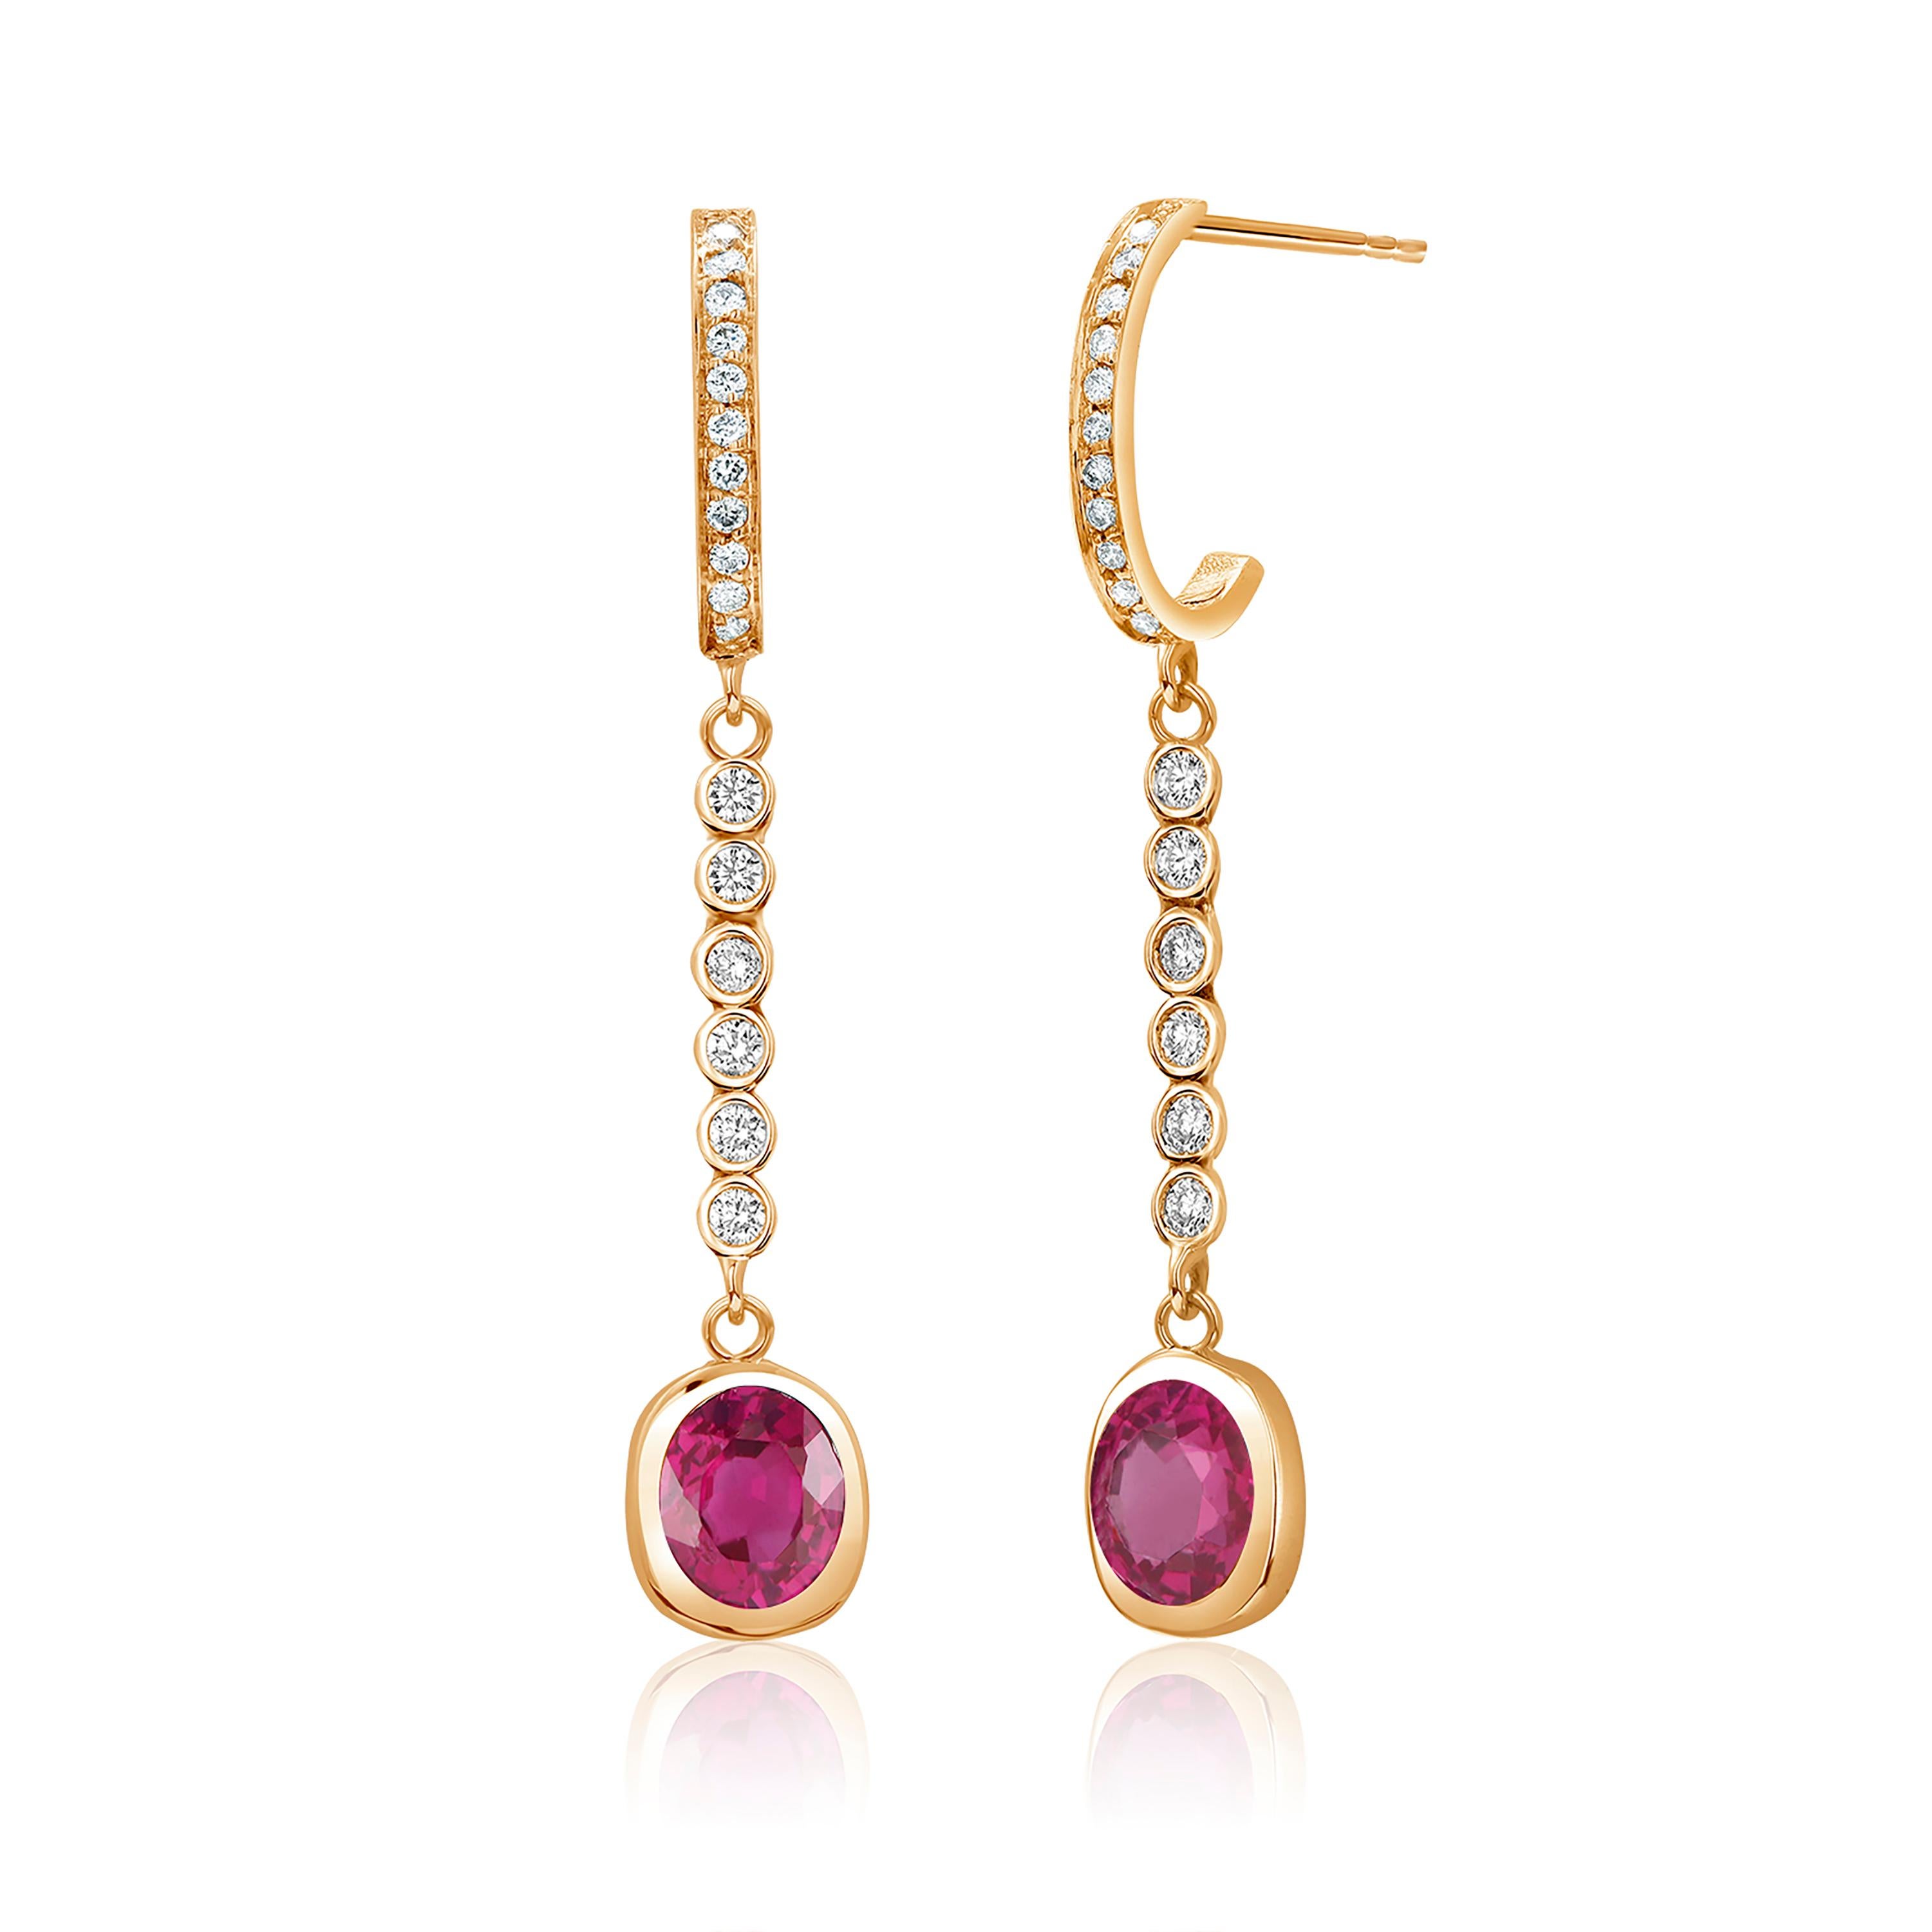 Oval Cut Bezel Set Burma Ruby Diamond 1.75 Carat 1.6 Inch Long Yellow Gold Earrings For Sale